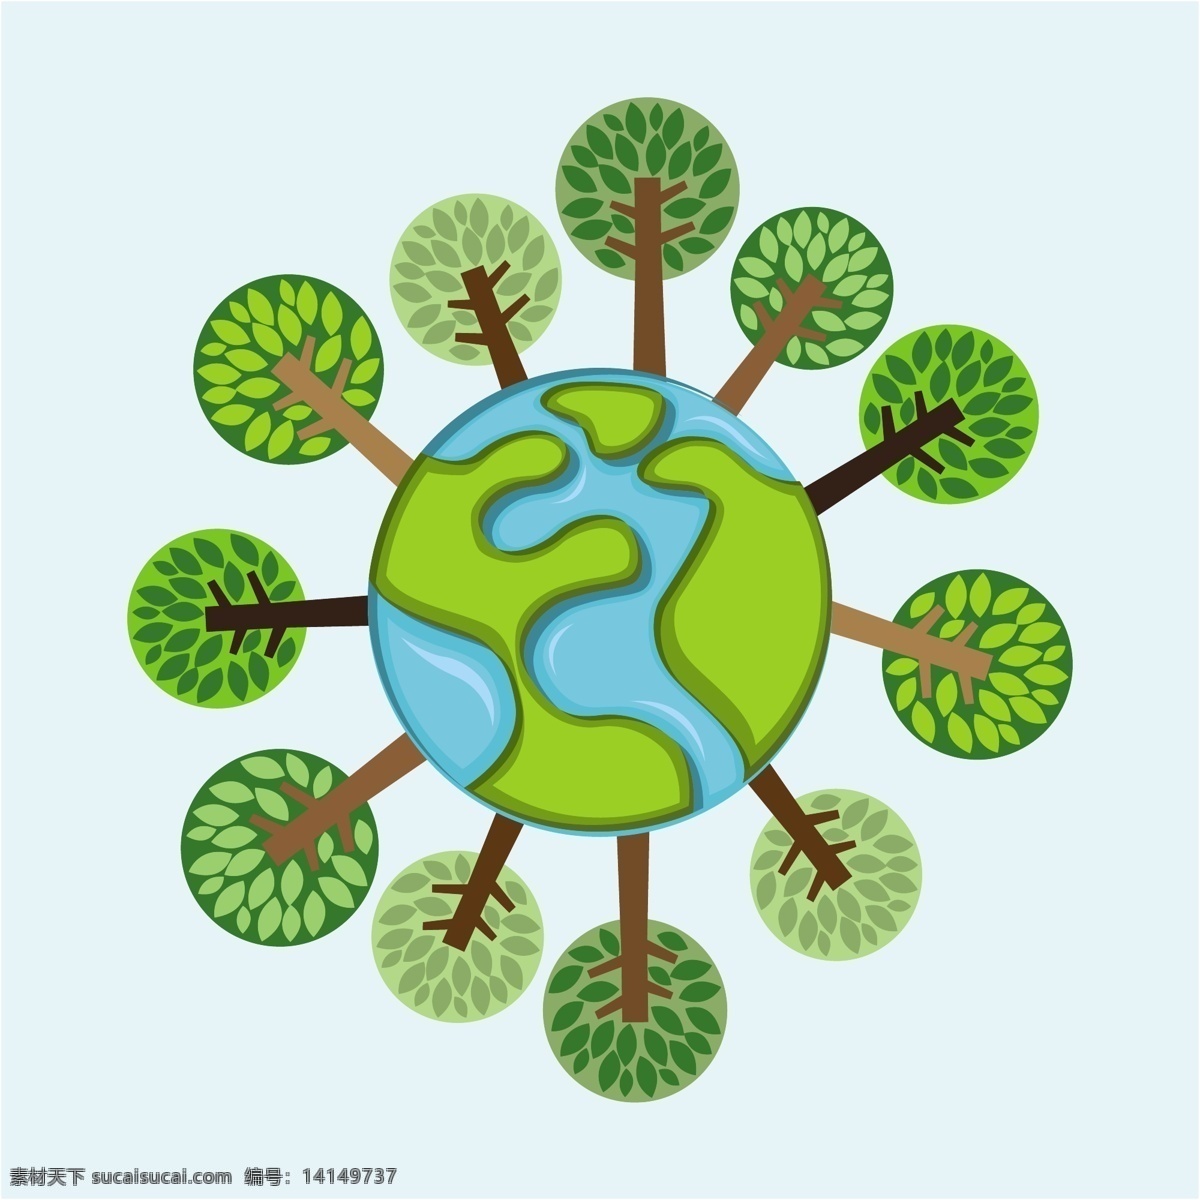 绿色地球 地球 星球 节能 环保 环境保护 低碳生活 节能减排 保护环境 矢量